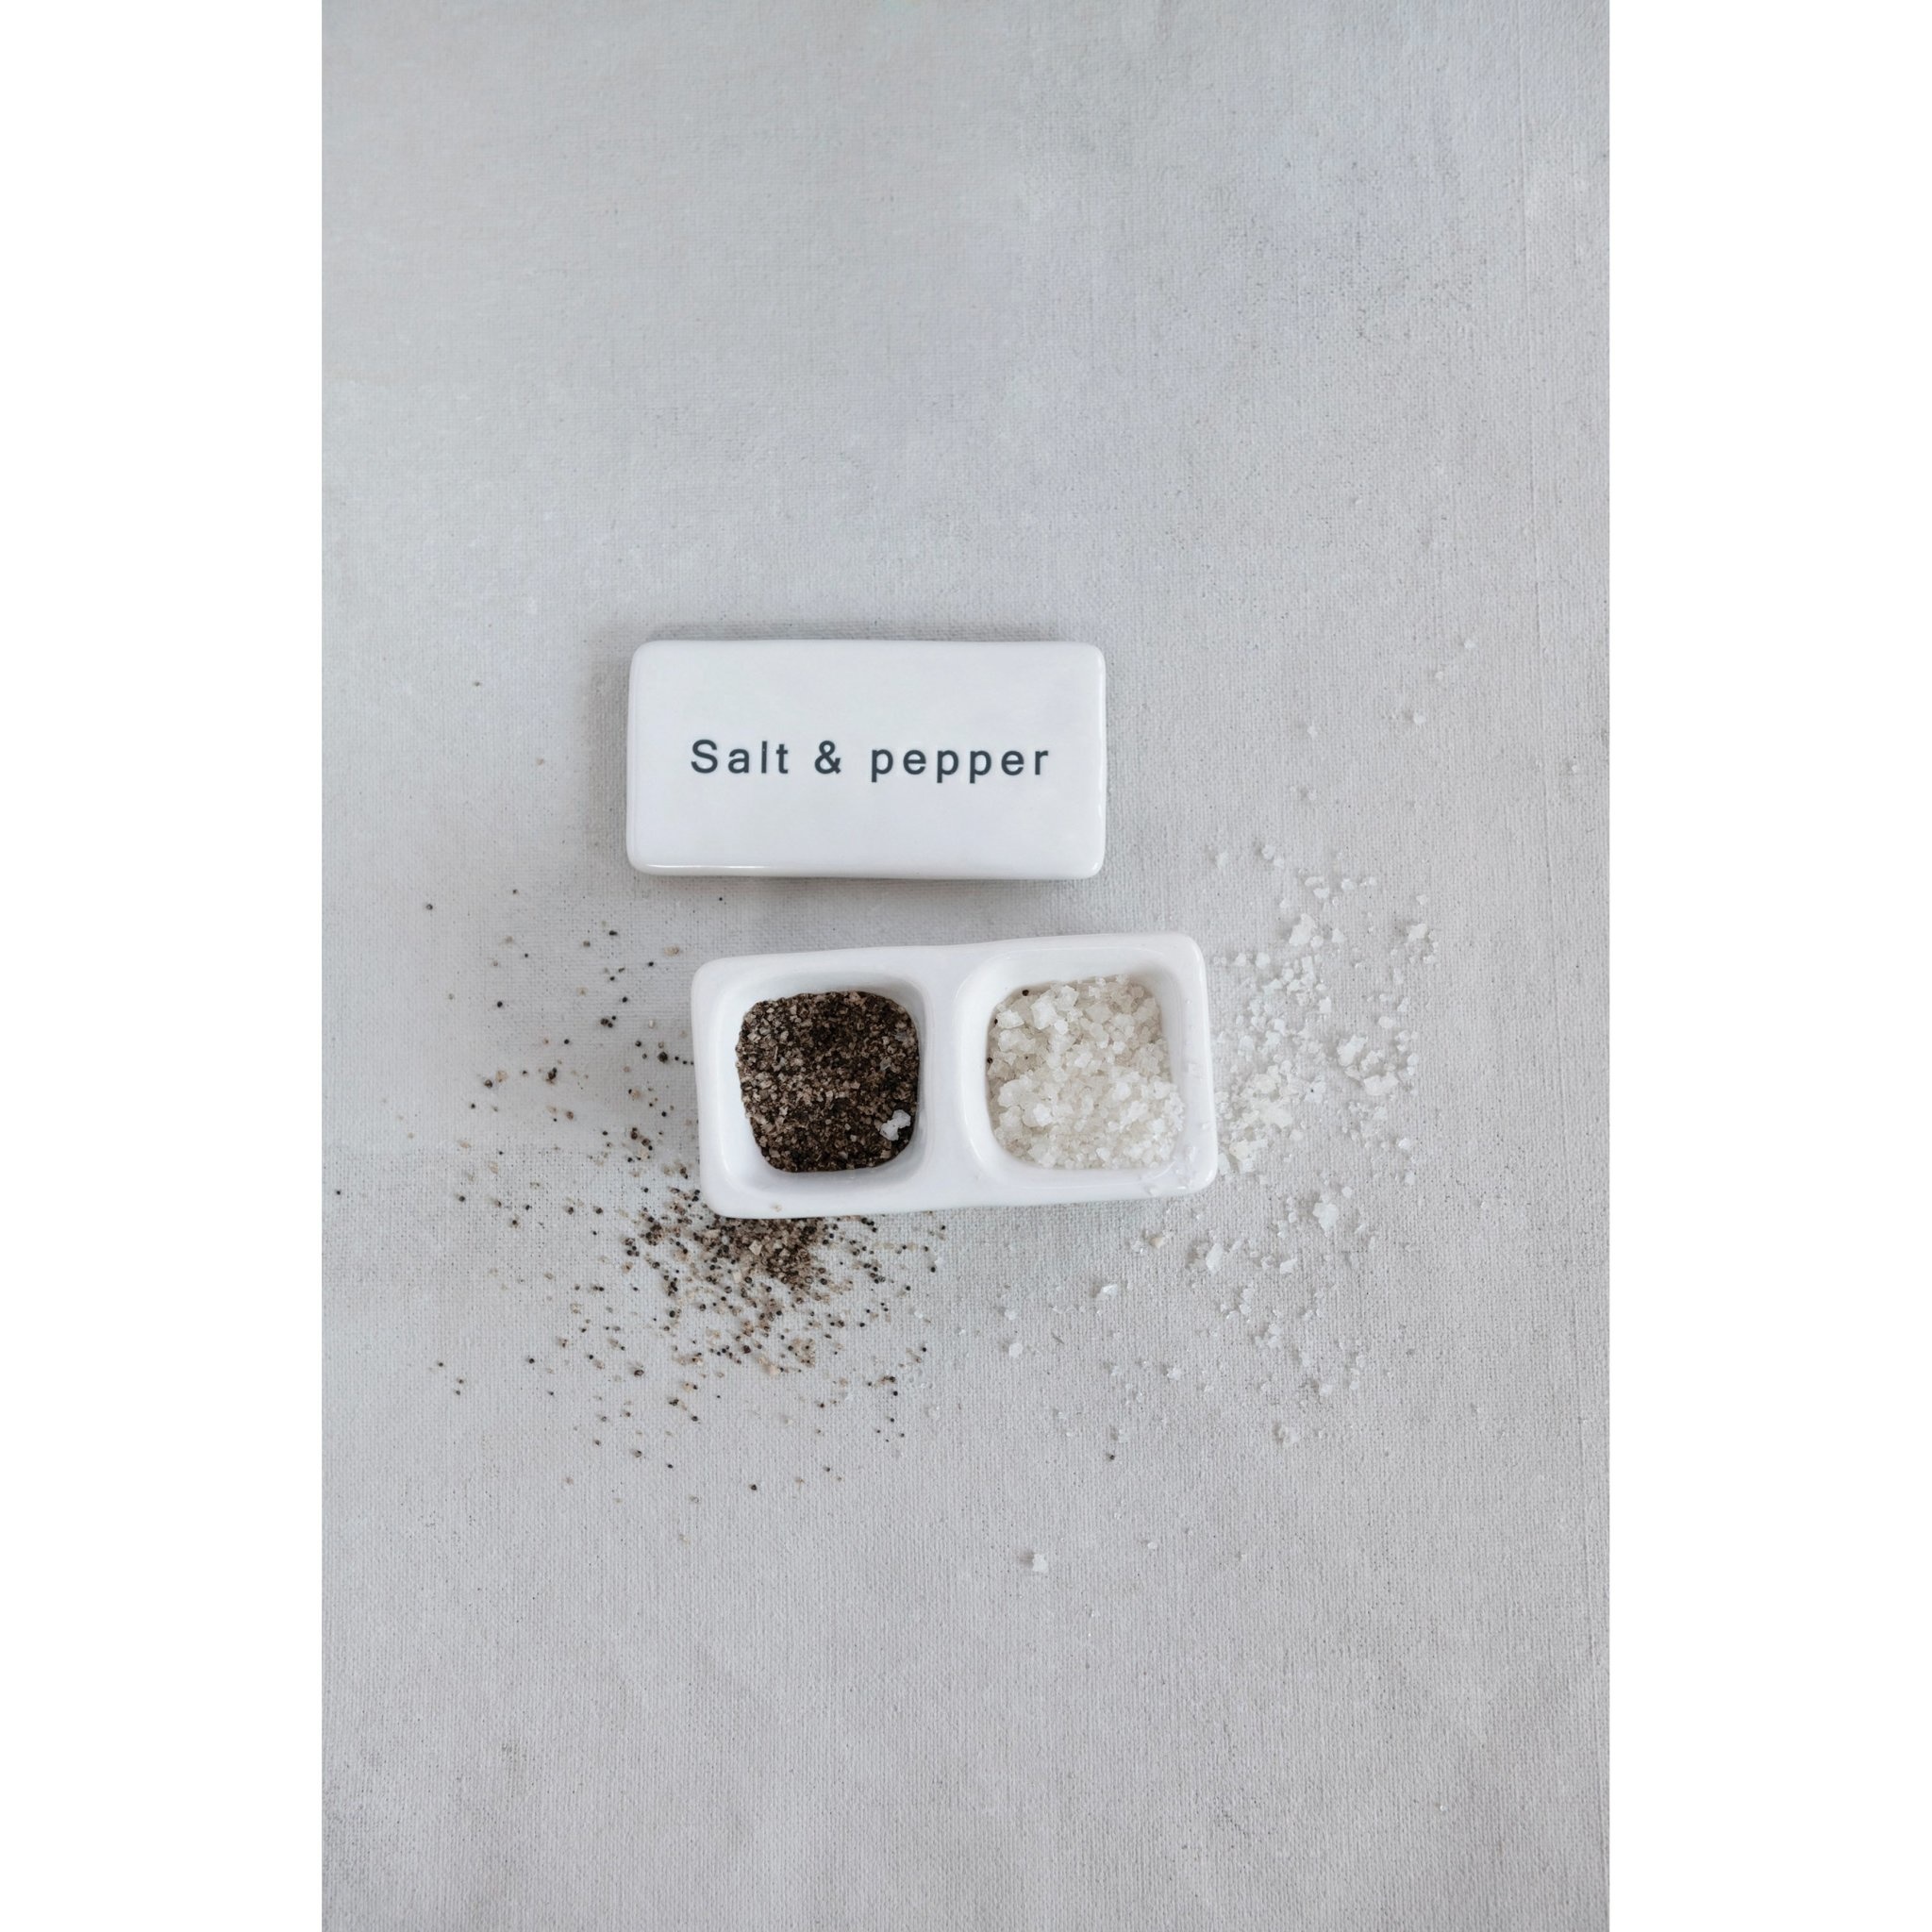 Stoneware Pinch Pot w/ Lid "Salt & Pepper", White & Black, 4" x 2"